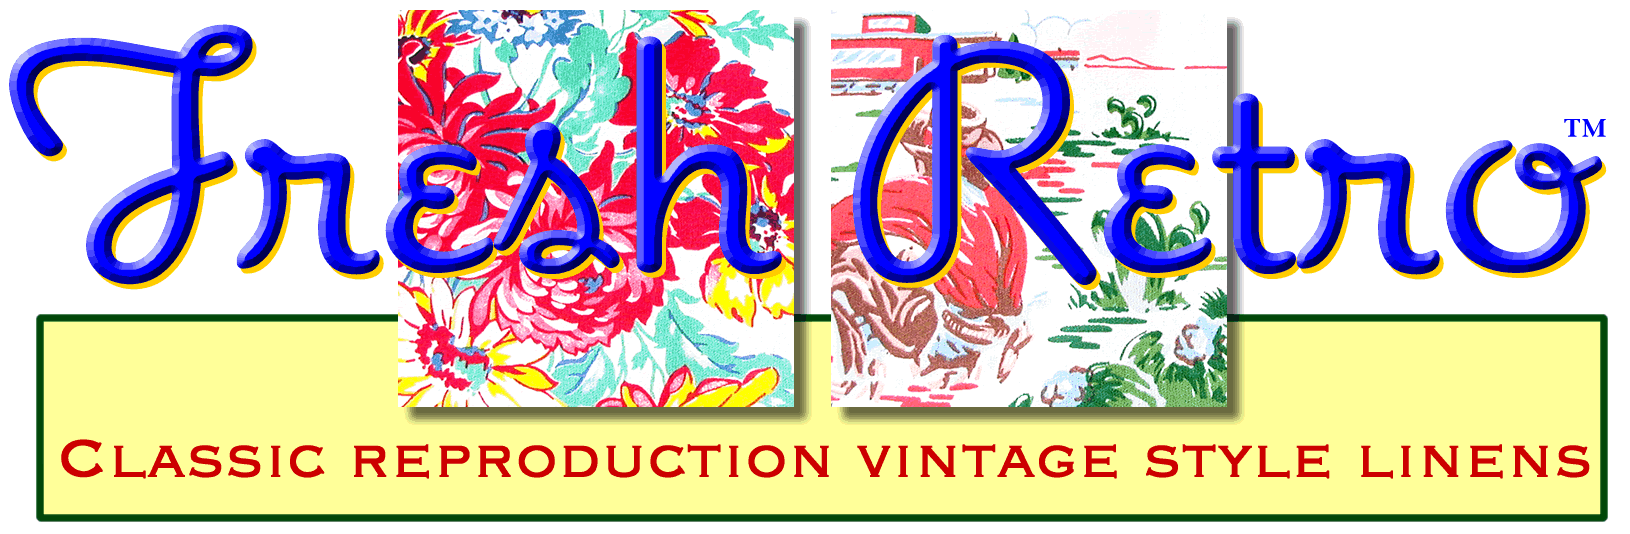 Fresh Retro Repro Tablecloths Logo Banner